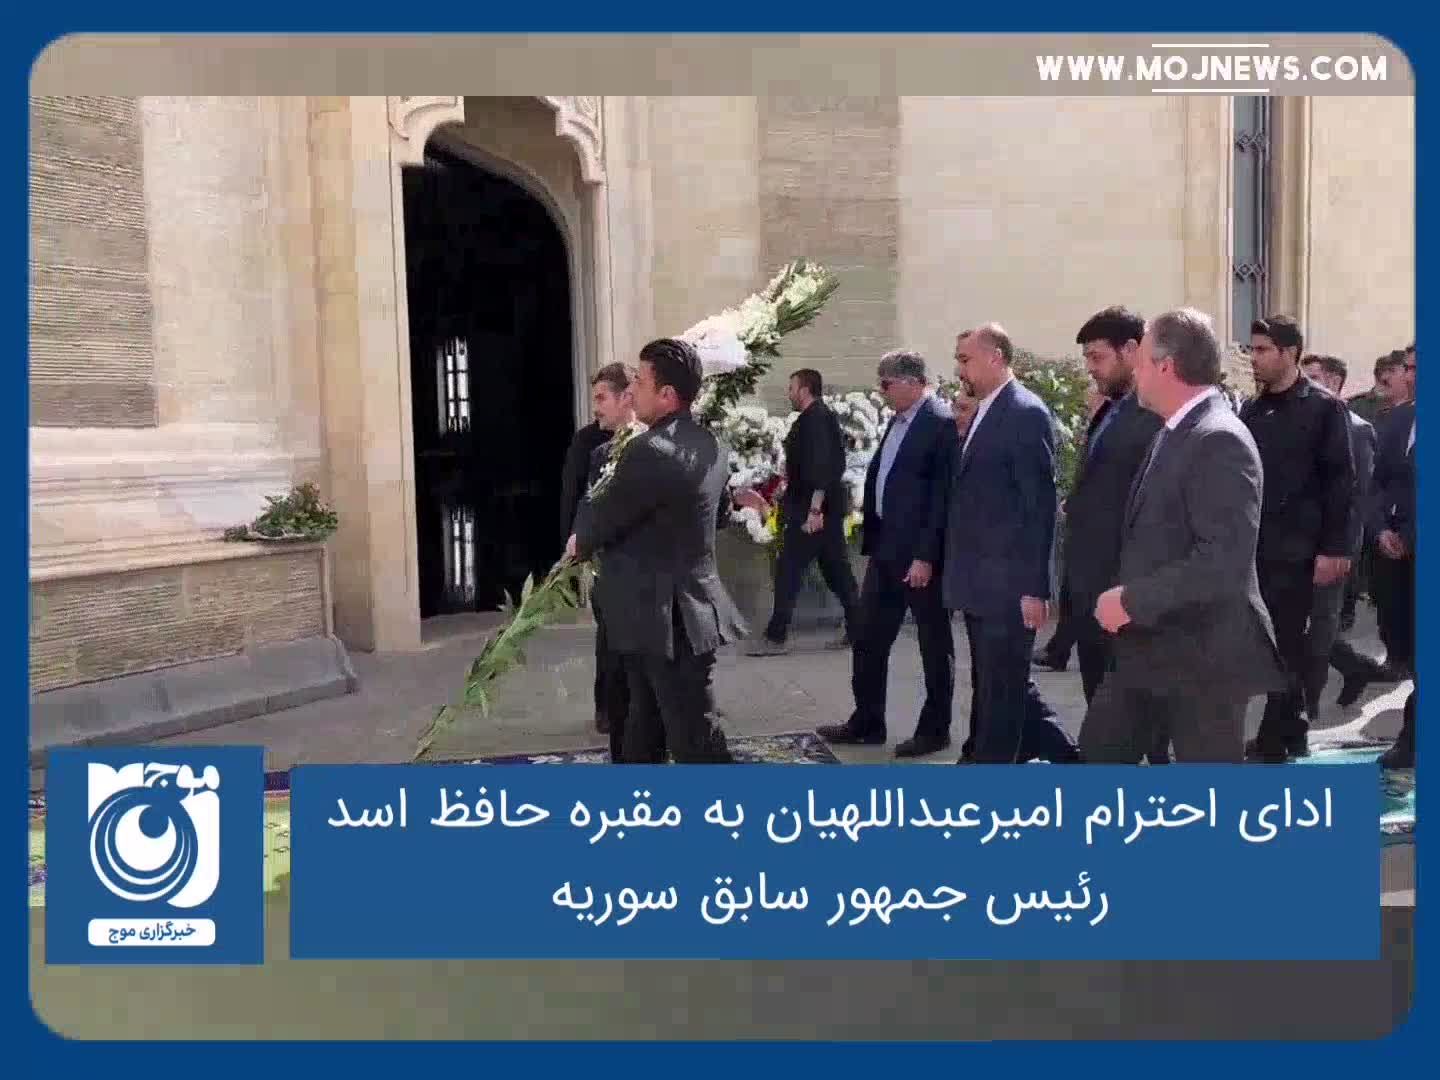 ادای احترام امیرعبداللهیان به مقبره حافظ اسد، رئیس جمهور سابق سوریه